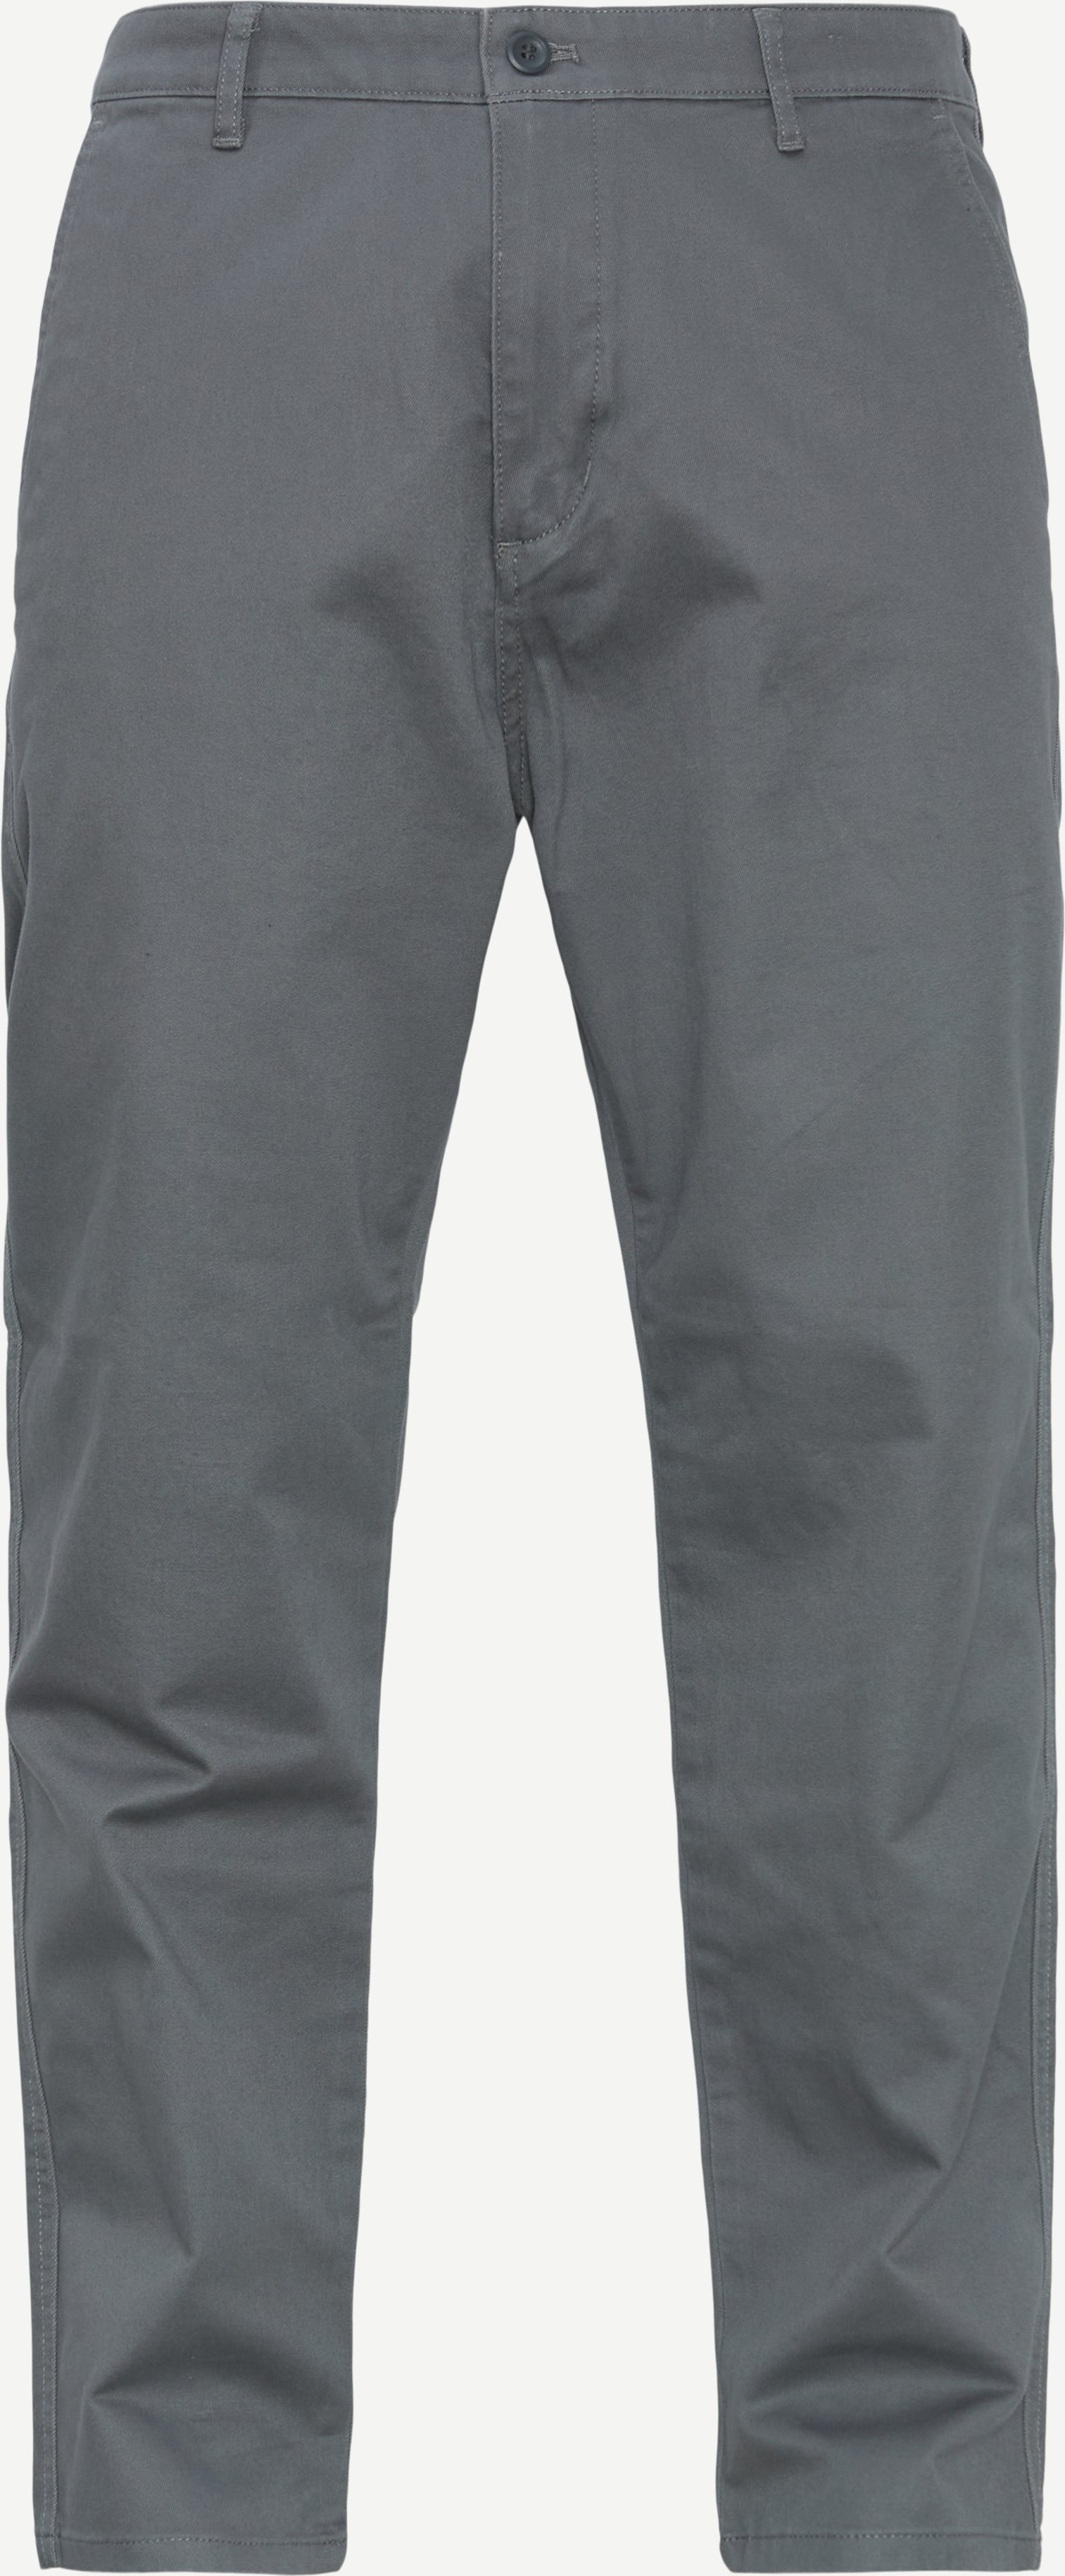 Dockers Trousers 4862 75807 Grey